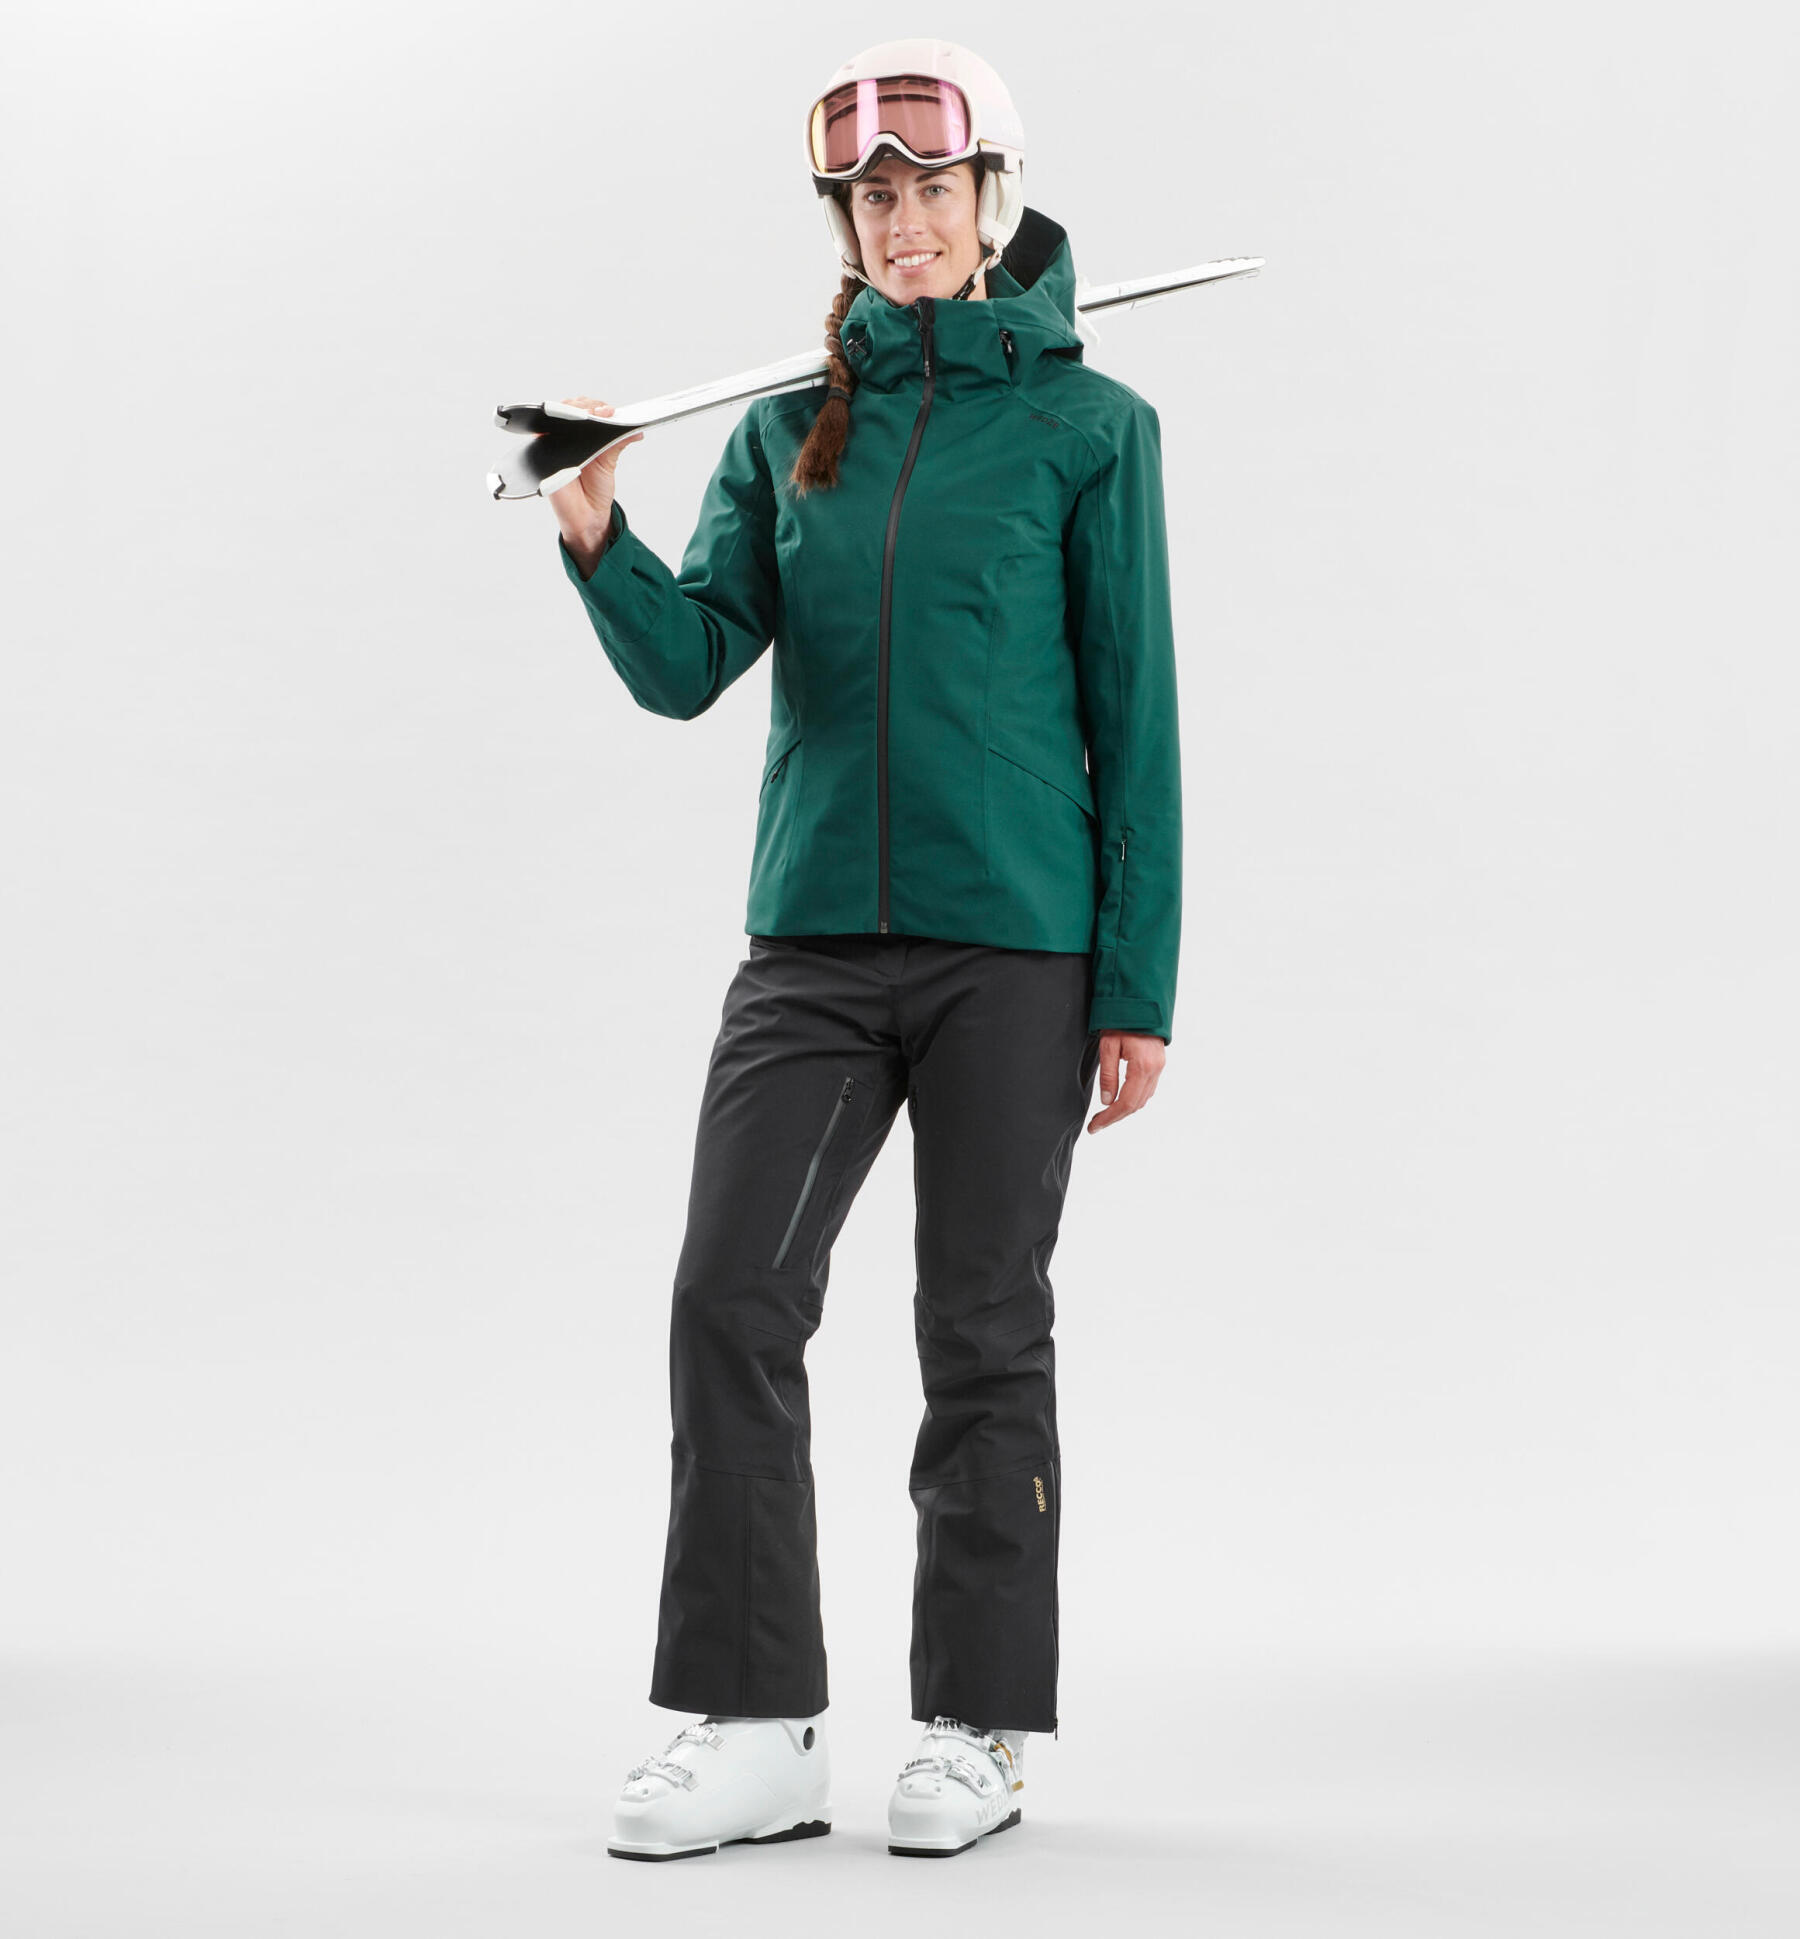 Downhill skiing jacket and pants